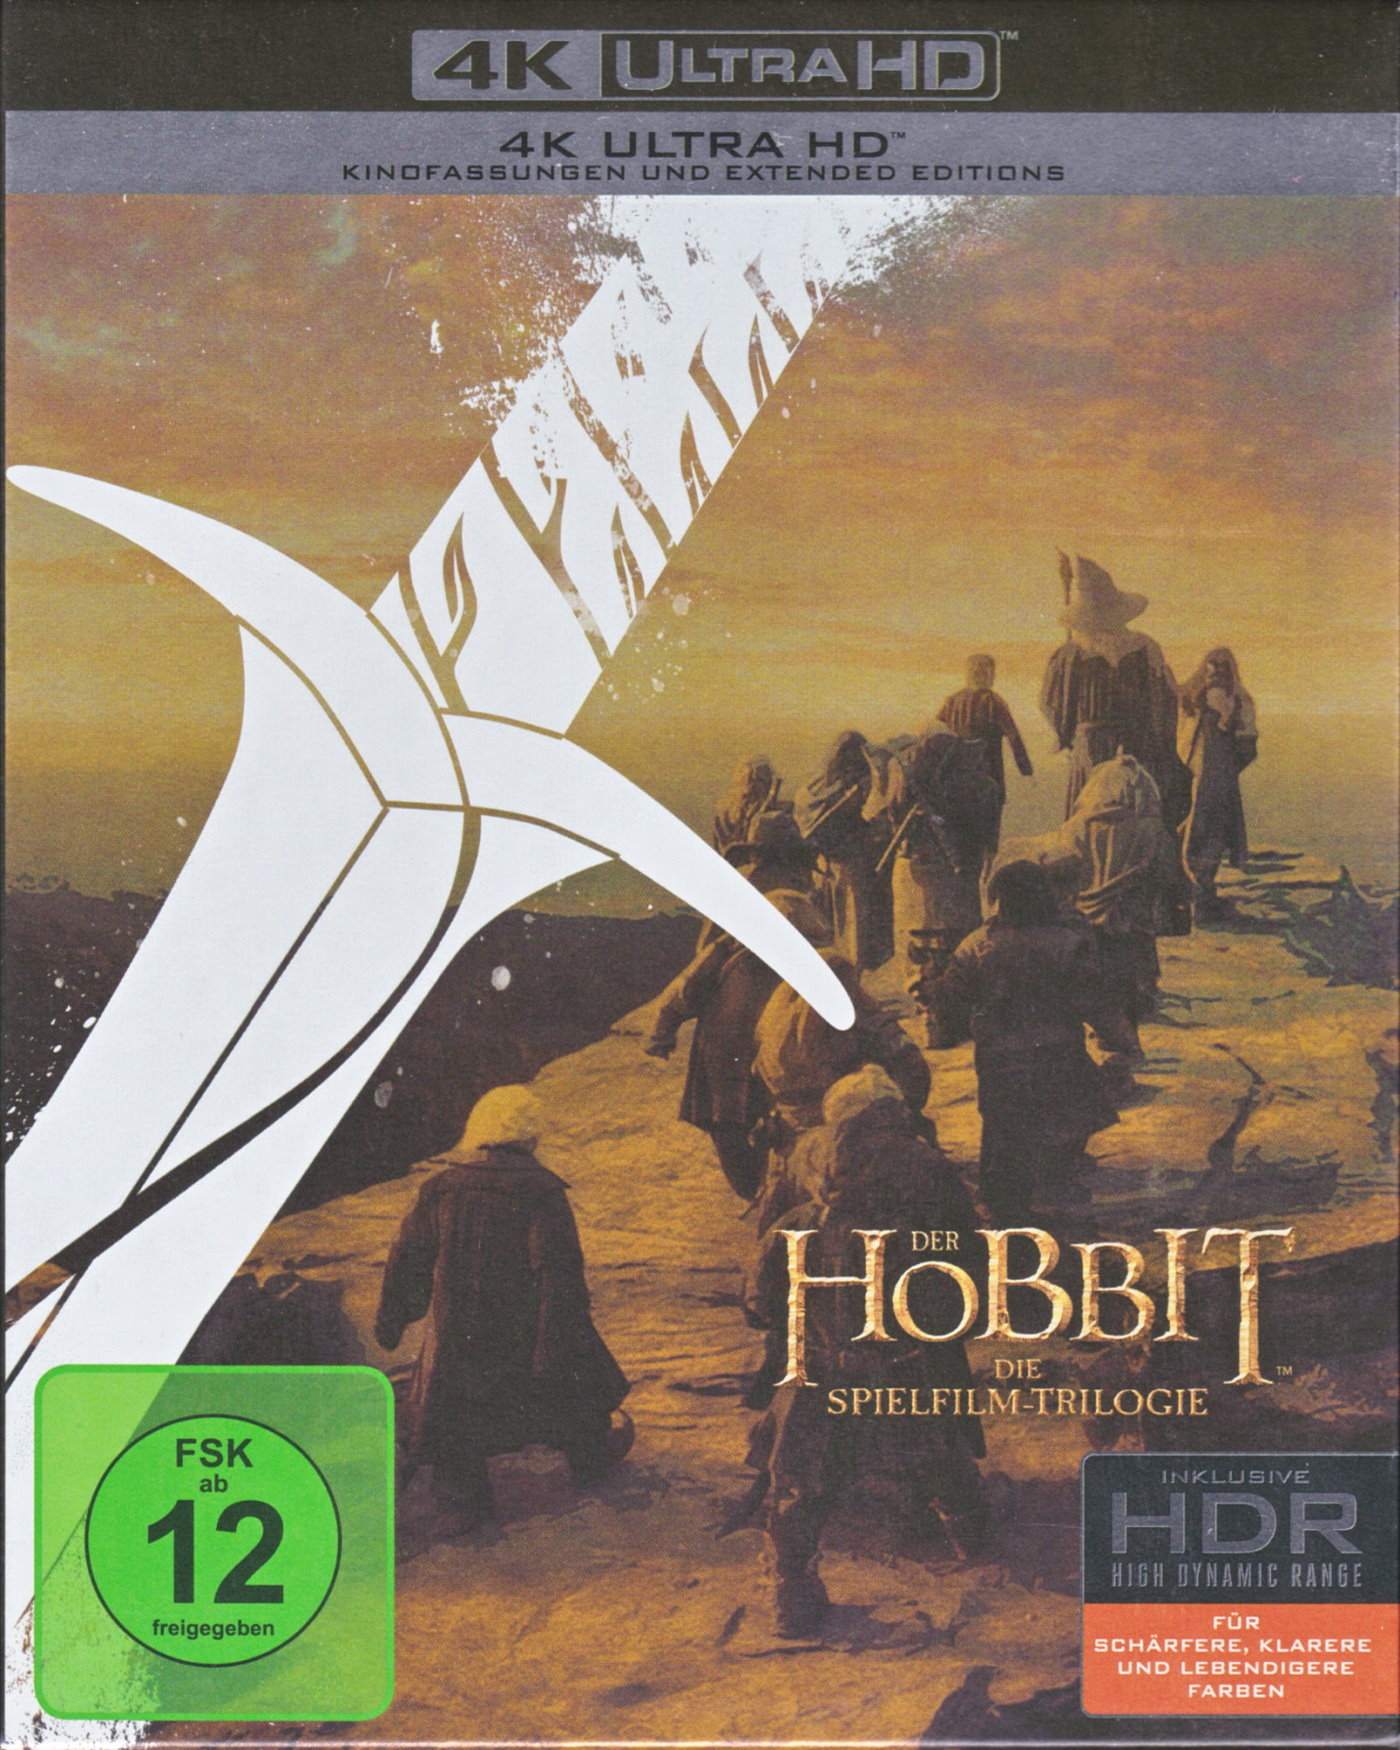 Cover - Der Hobbit - Eine unerwartete Reise.jpg